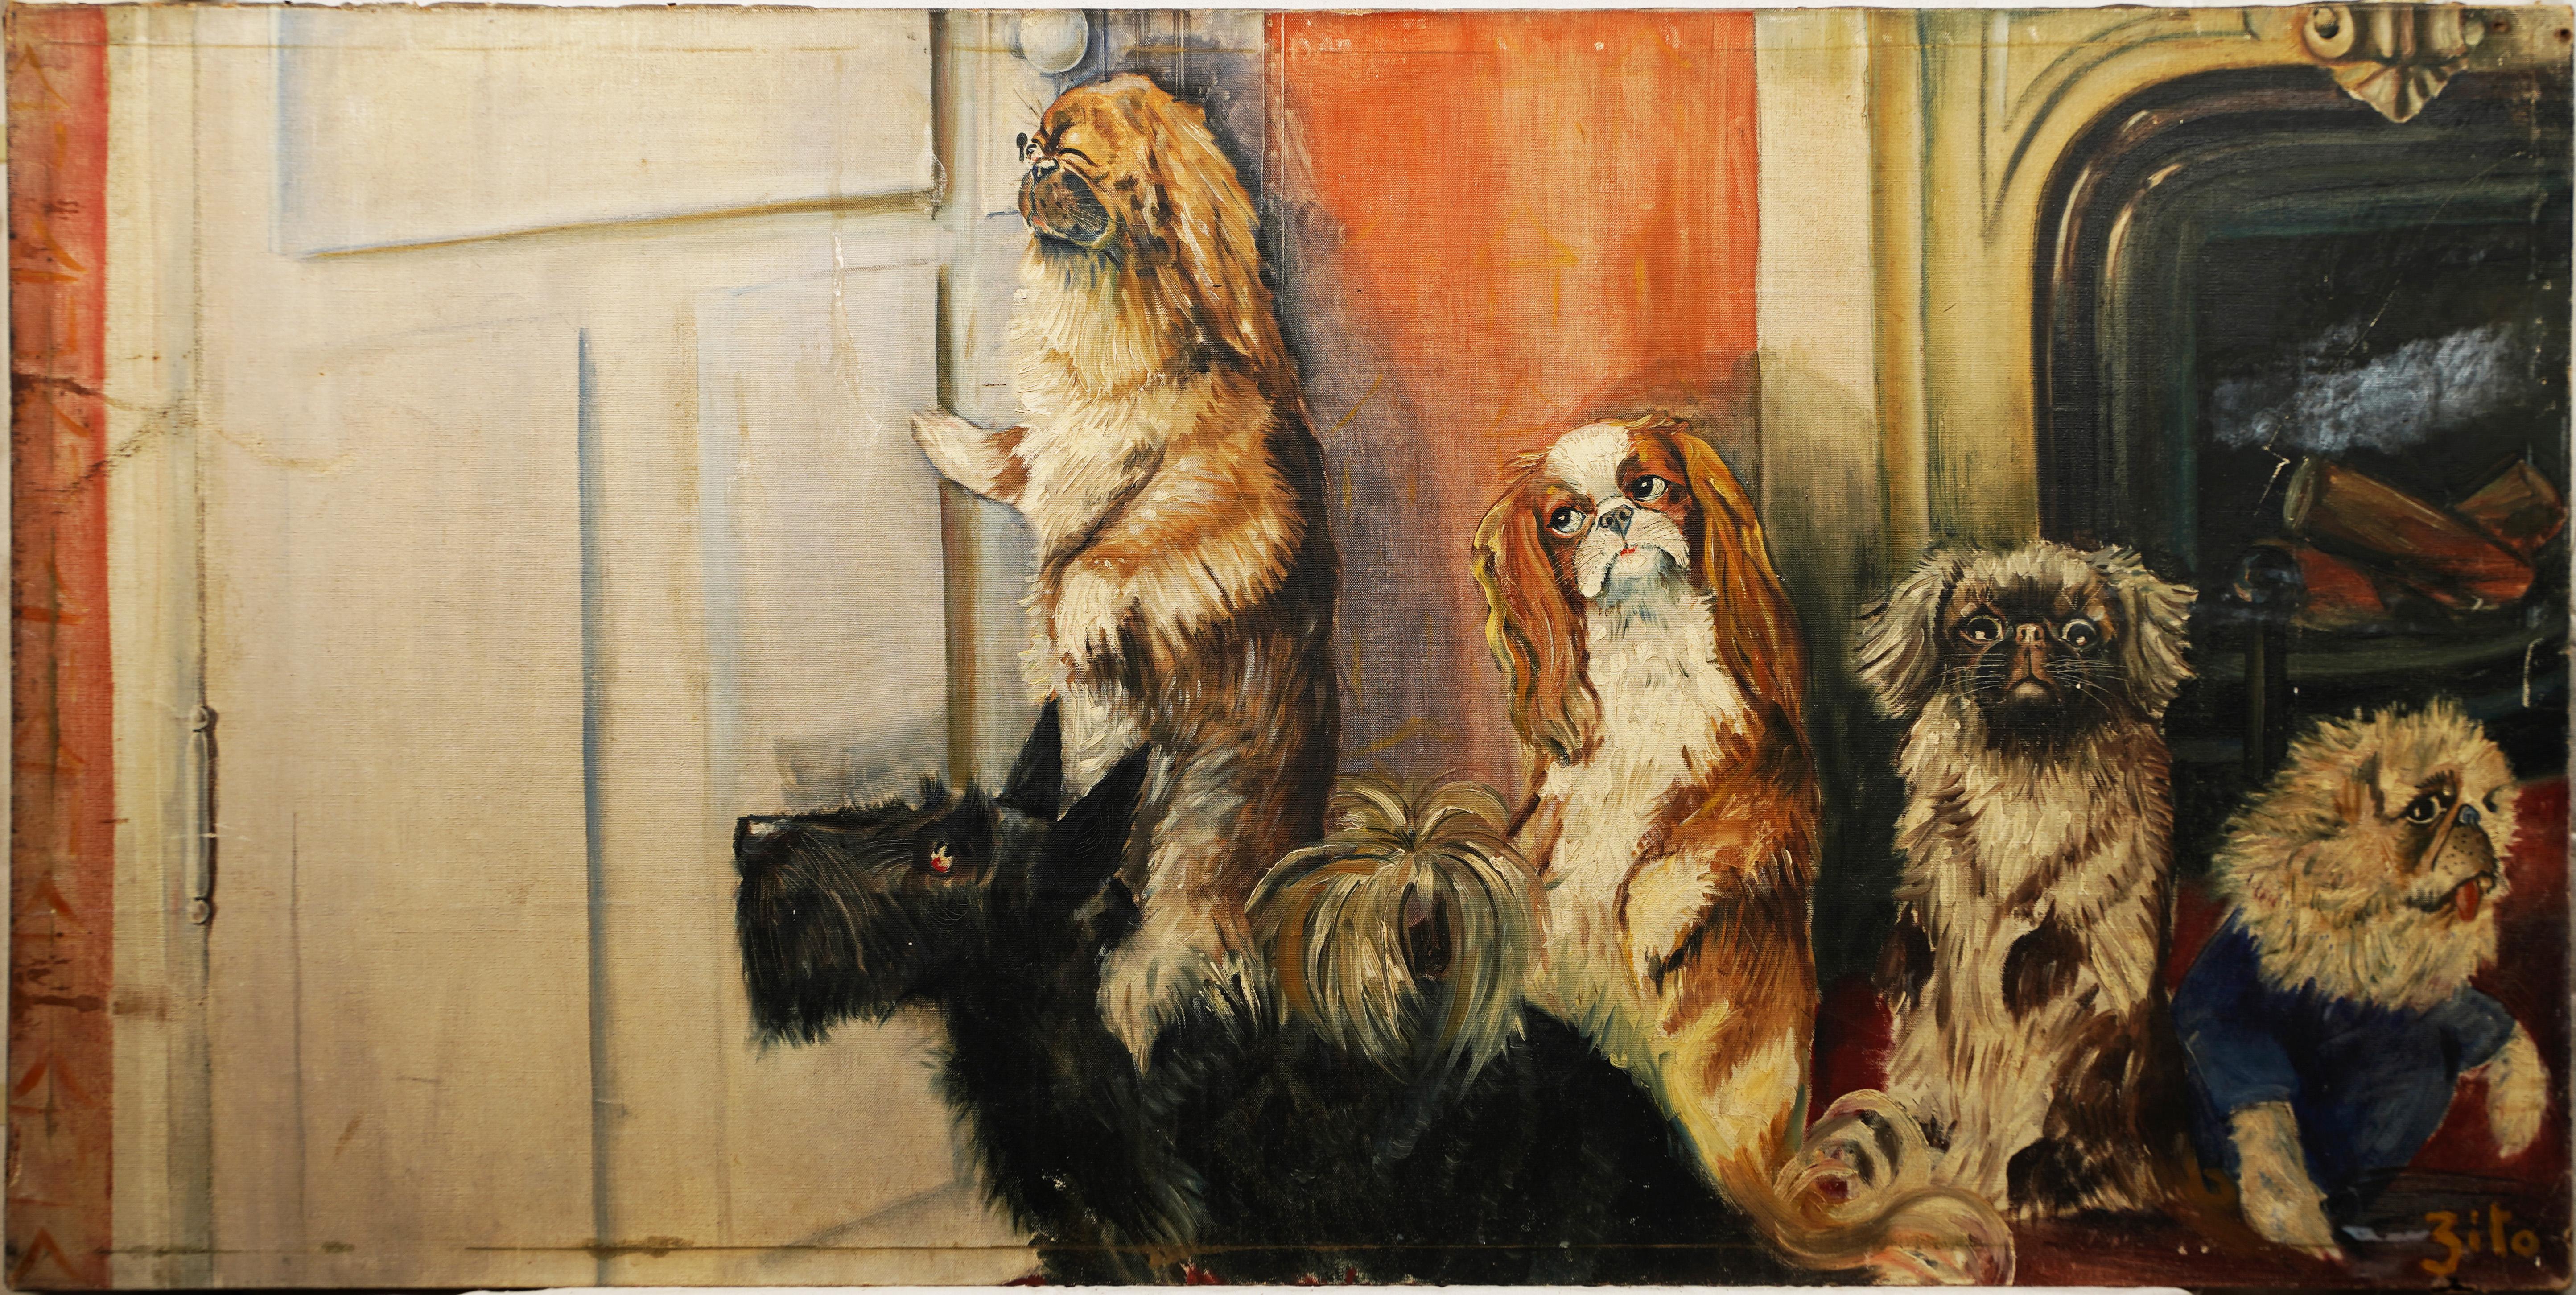 Grand portrait ancien de chien d'art populaire américain « Peep Hole », peinture à l'huile intérieure - Painting de Unknown